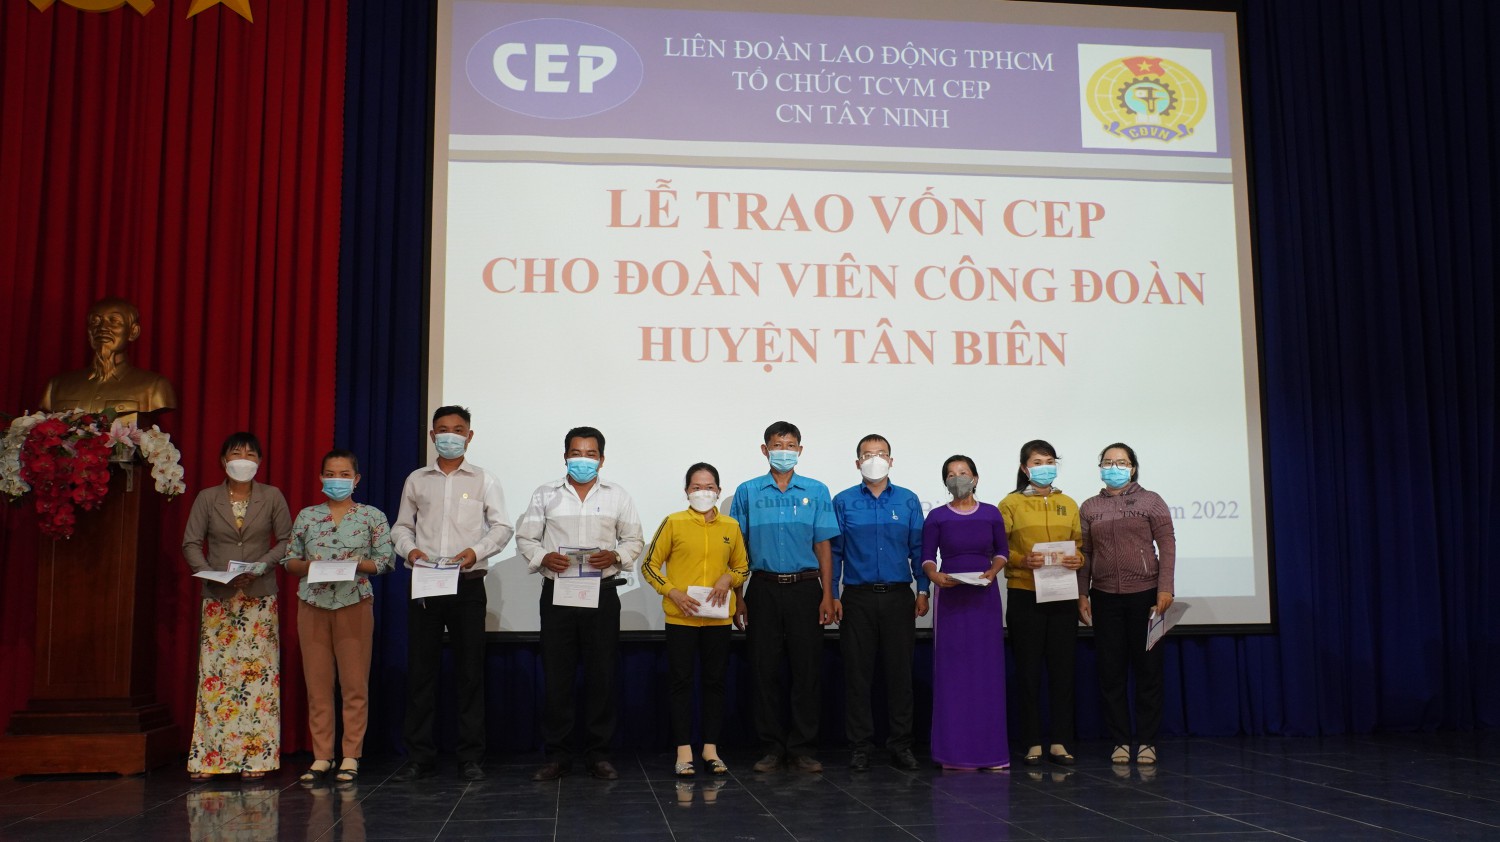 LĐLĐ huyện Tân Biên phối hợp Triển khai nguồn vốn CEP với lãi suất ưu đãi đến đoàn viên công đoàn, người lao động trên địa bàn huyện